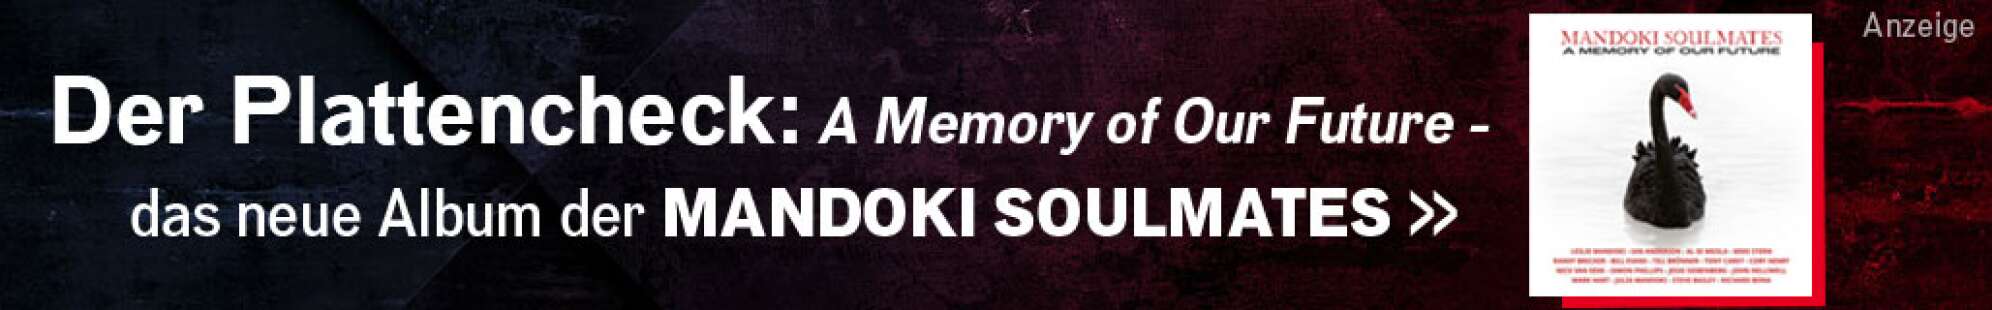 Werbeanzeige der Band Mandoki Soulmates - zu sehen sind ein Albumcover und der Text: Der Plattencheck: A Memory of our Future - das neue Album der Mandoki Soulmates